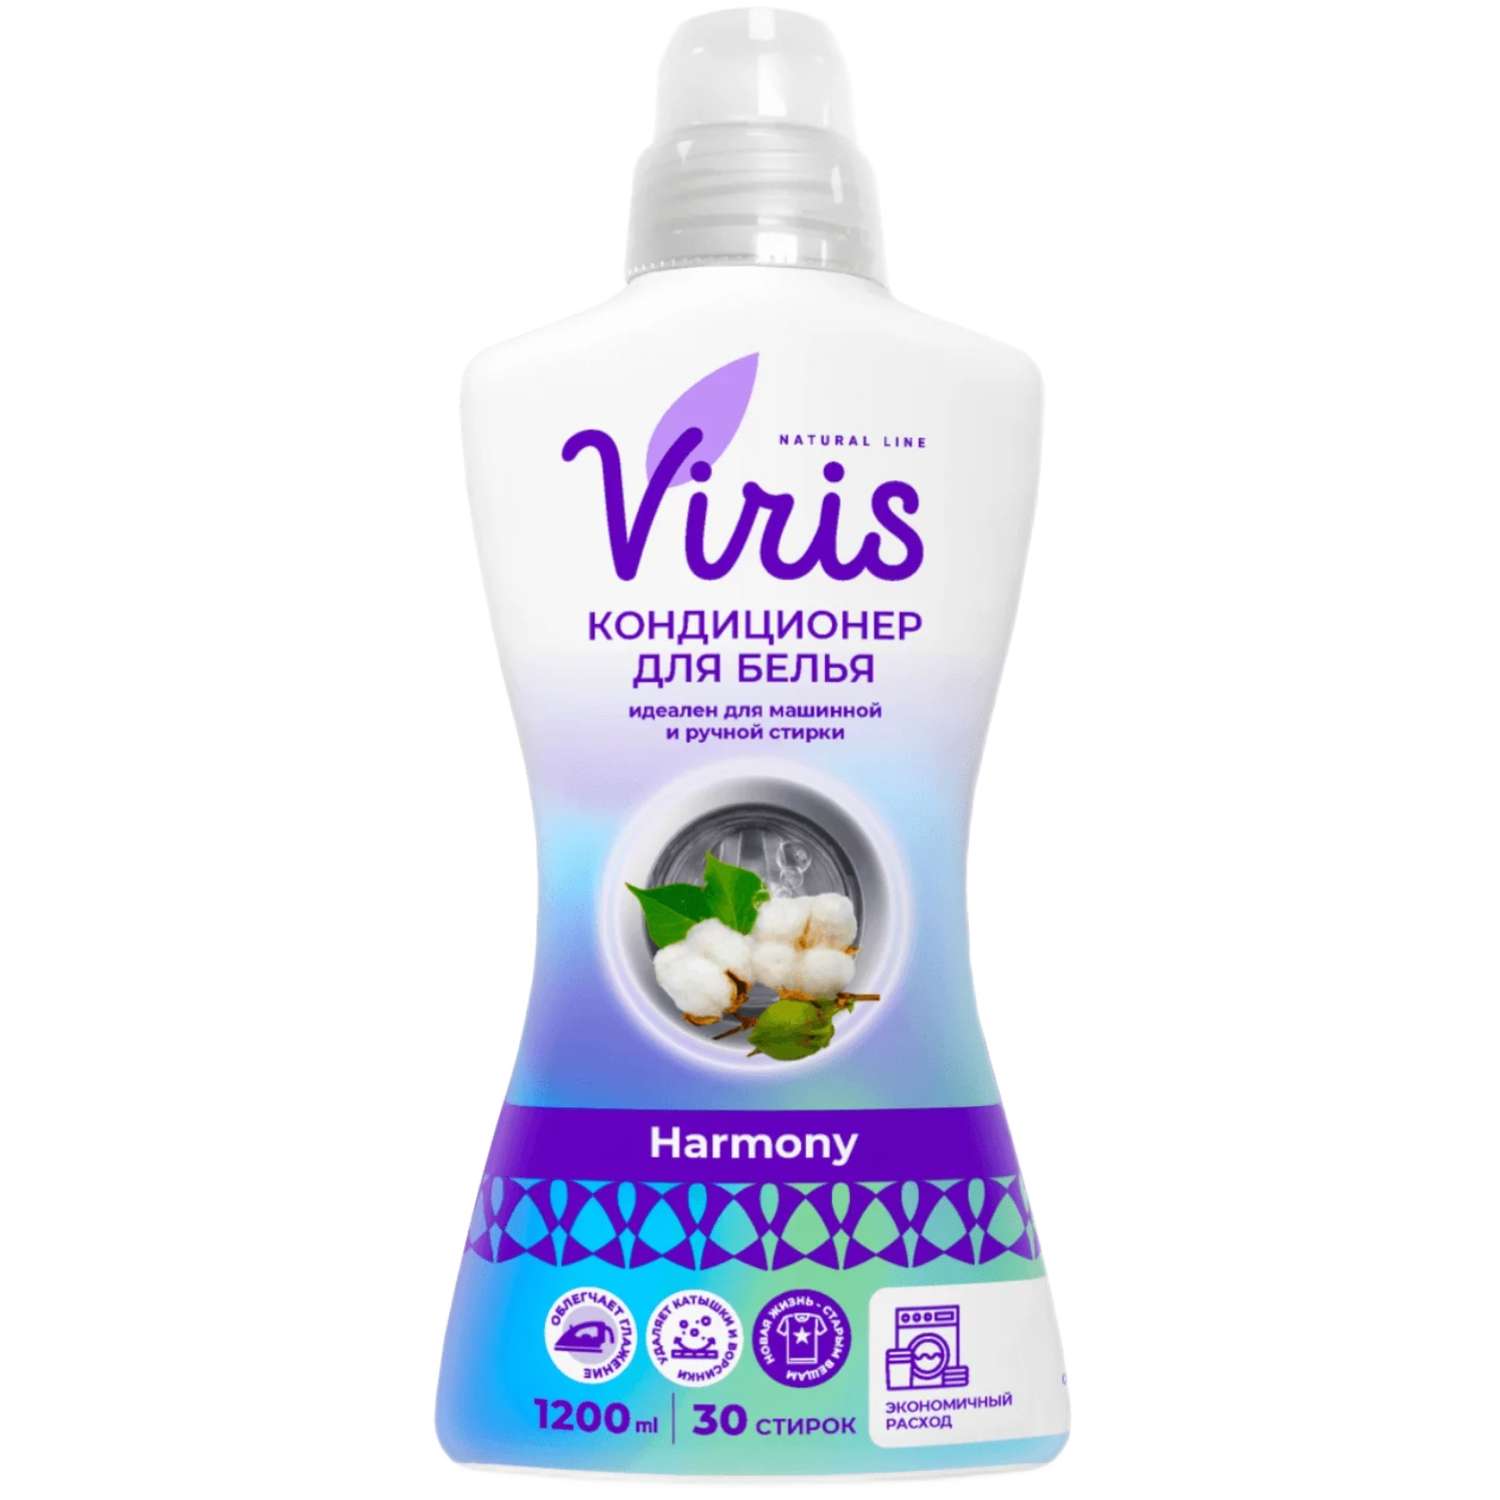 Кондиционер для белья Viris Придает белью мягкость и приятный аромат - фото 1